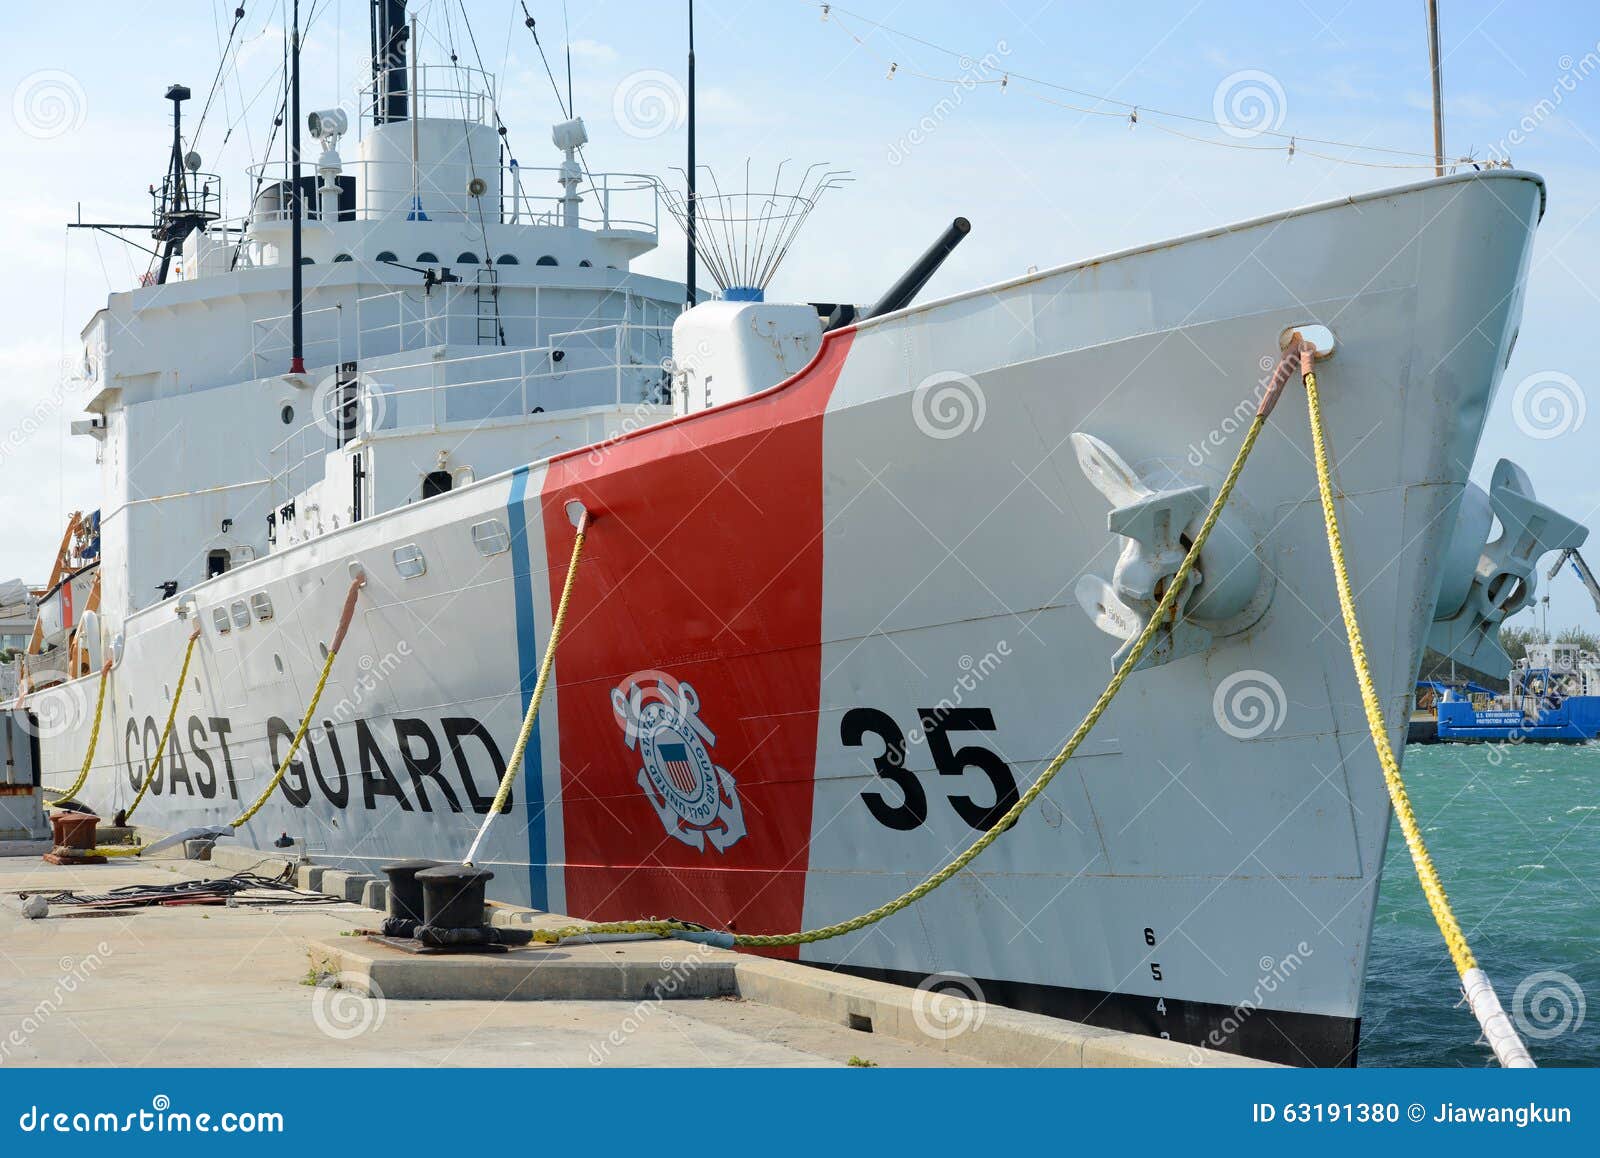 United States Coast Guard Ship Photo Print --USCG USCGC Ingham WPG 35 